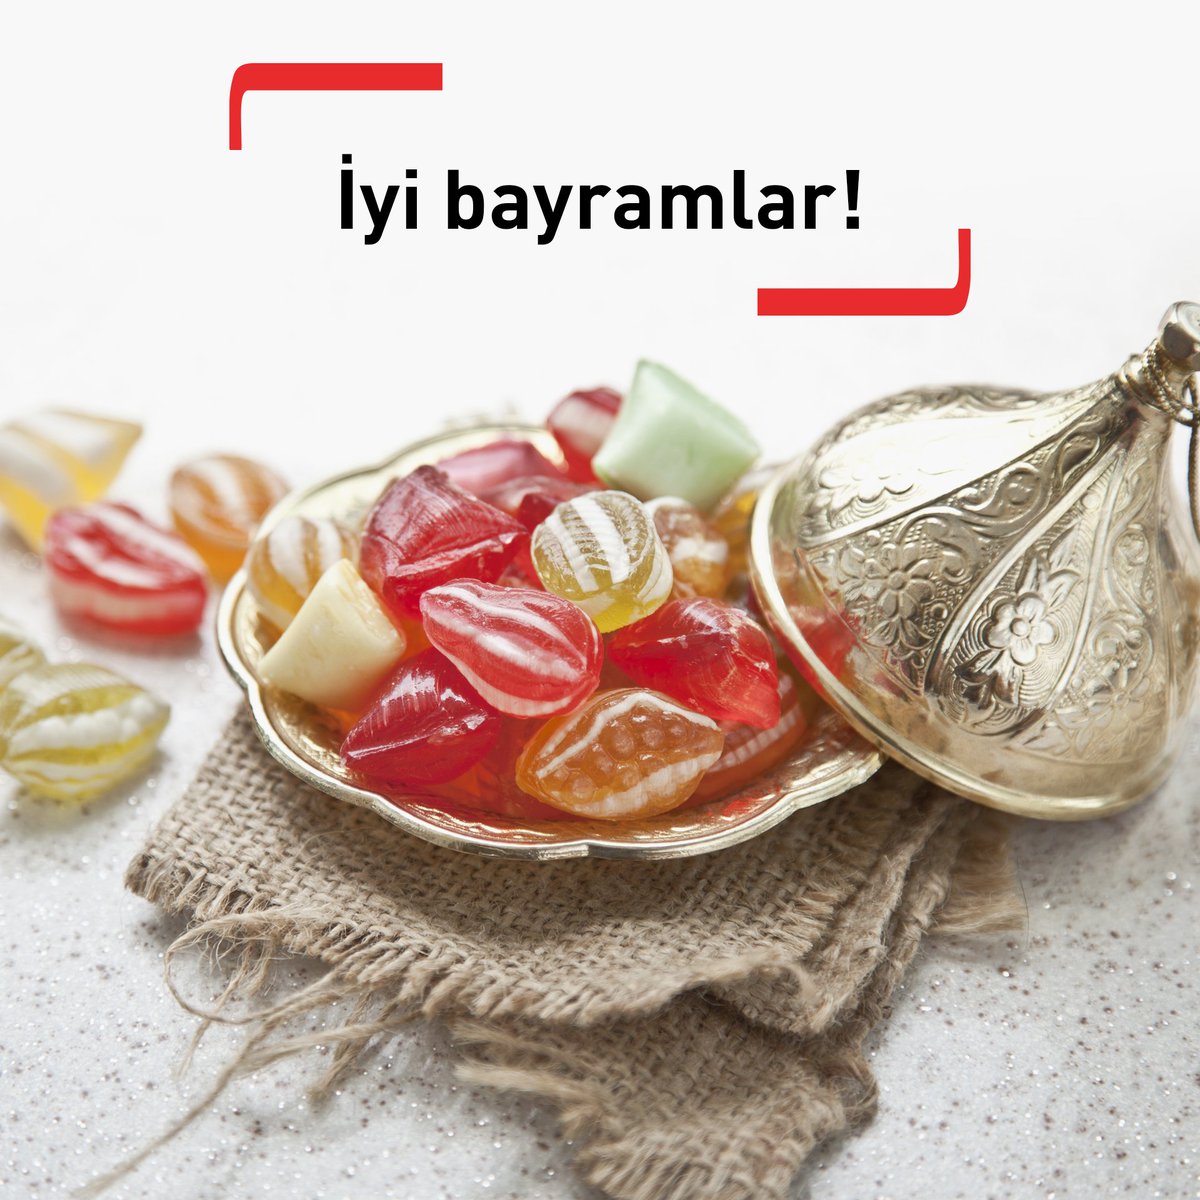 Şeker tadında bir bayram geçirmeniz dileğiyle! #RamazanBayramı